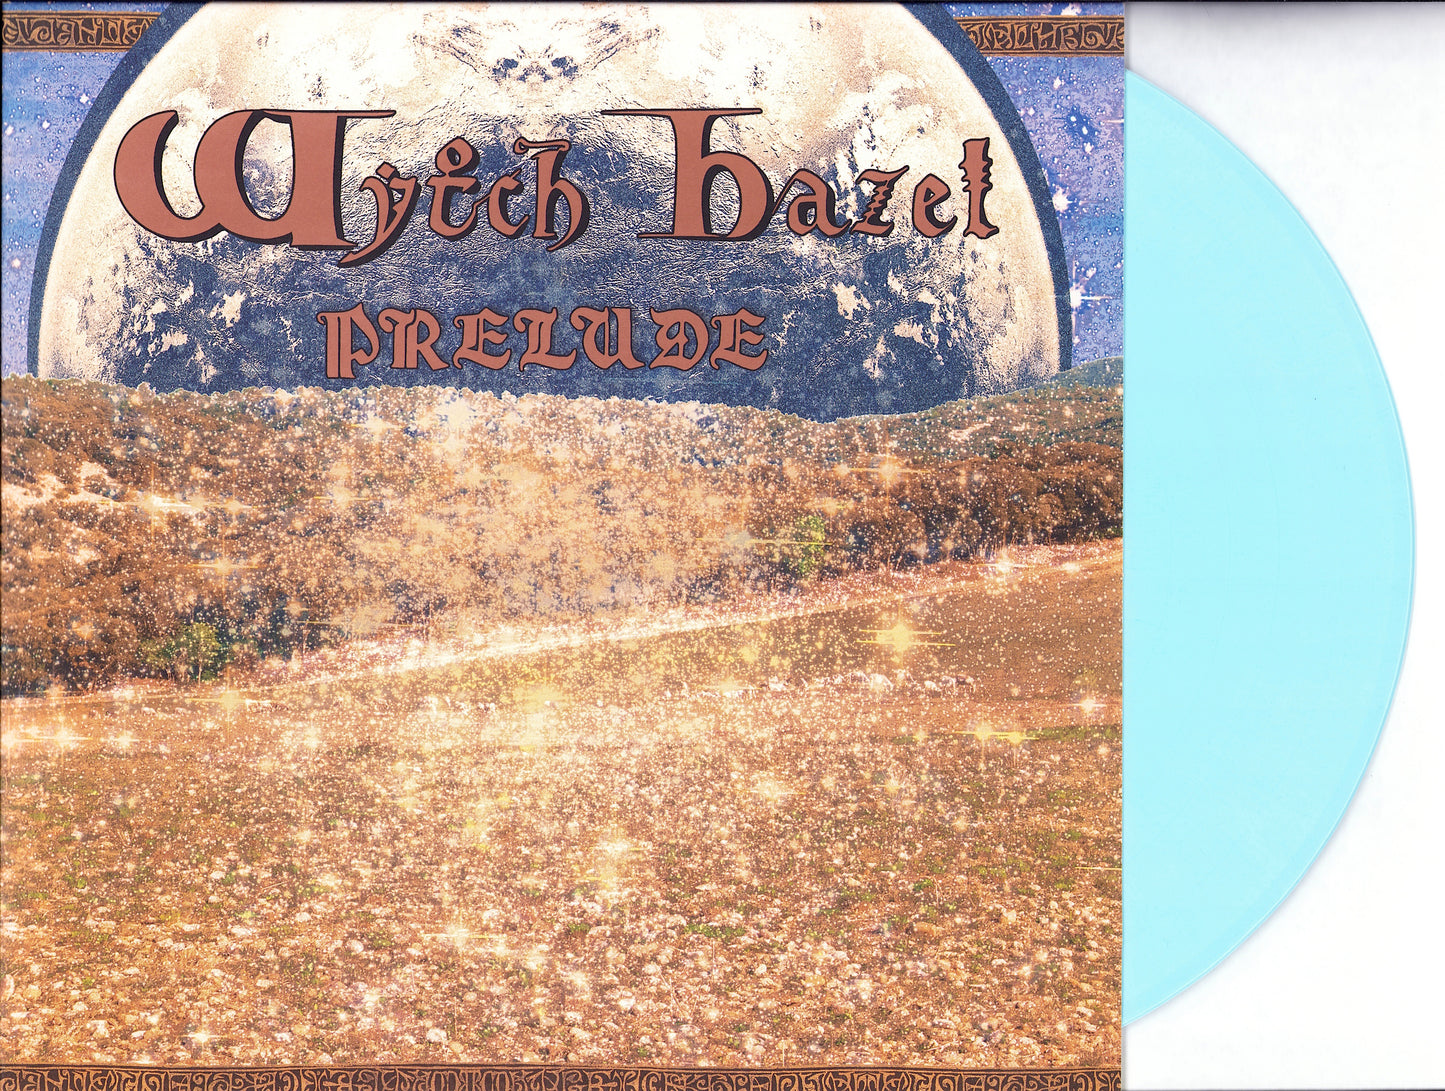 Wytch Hazel - Prelude Blue Vinyl LP